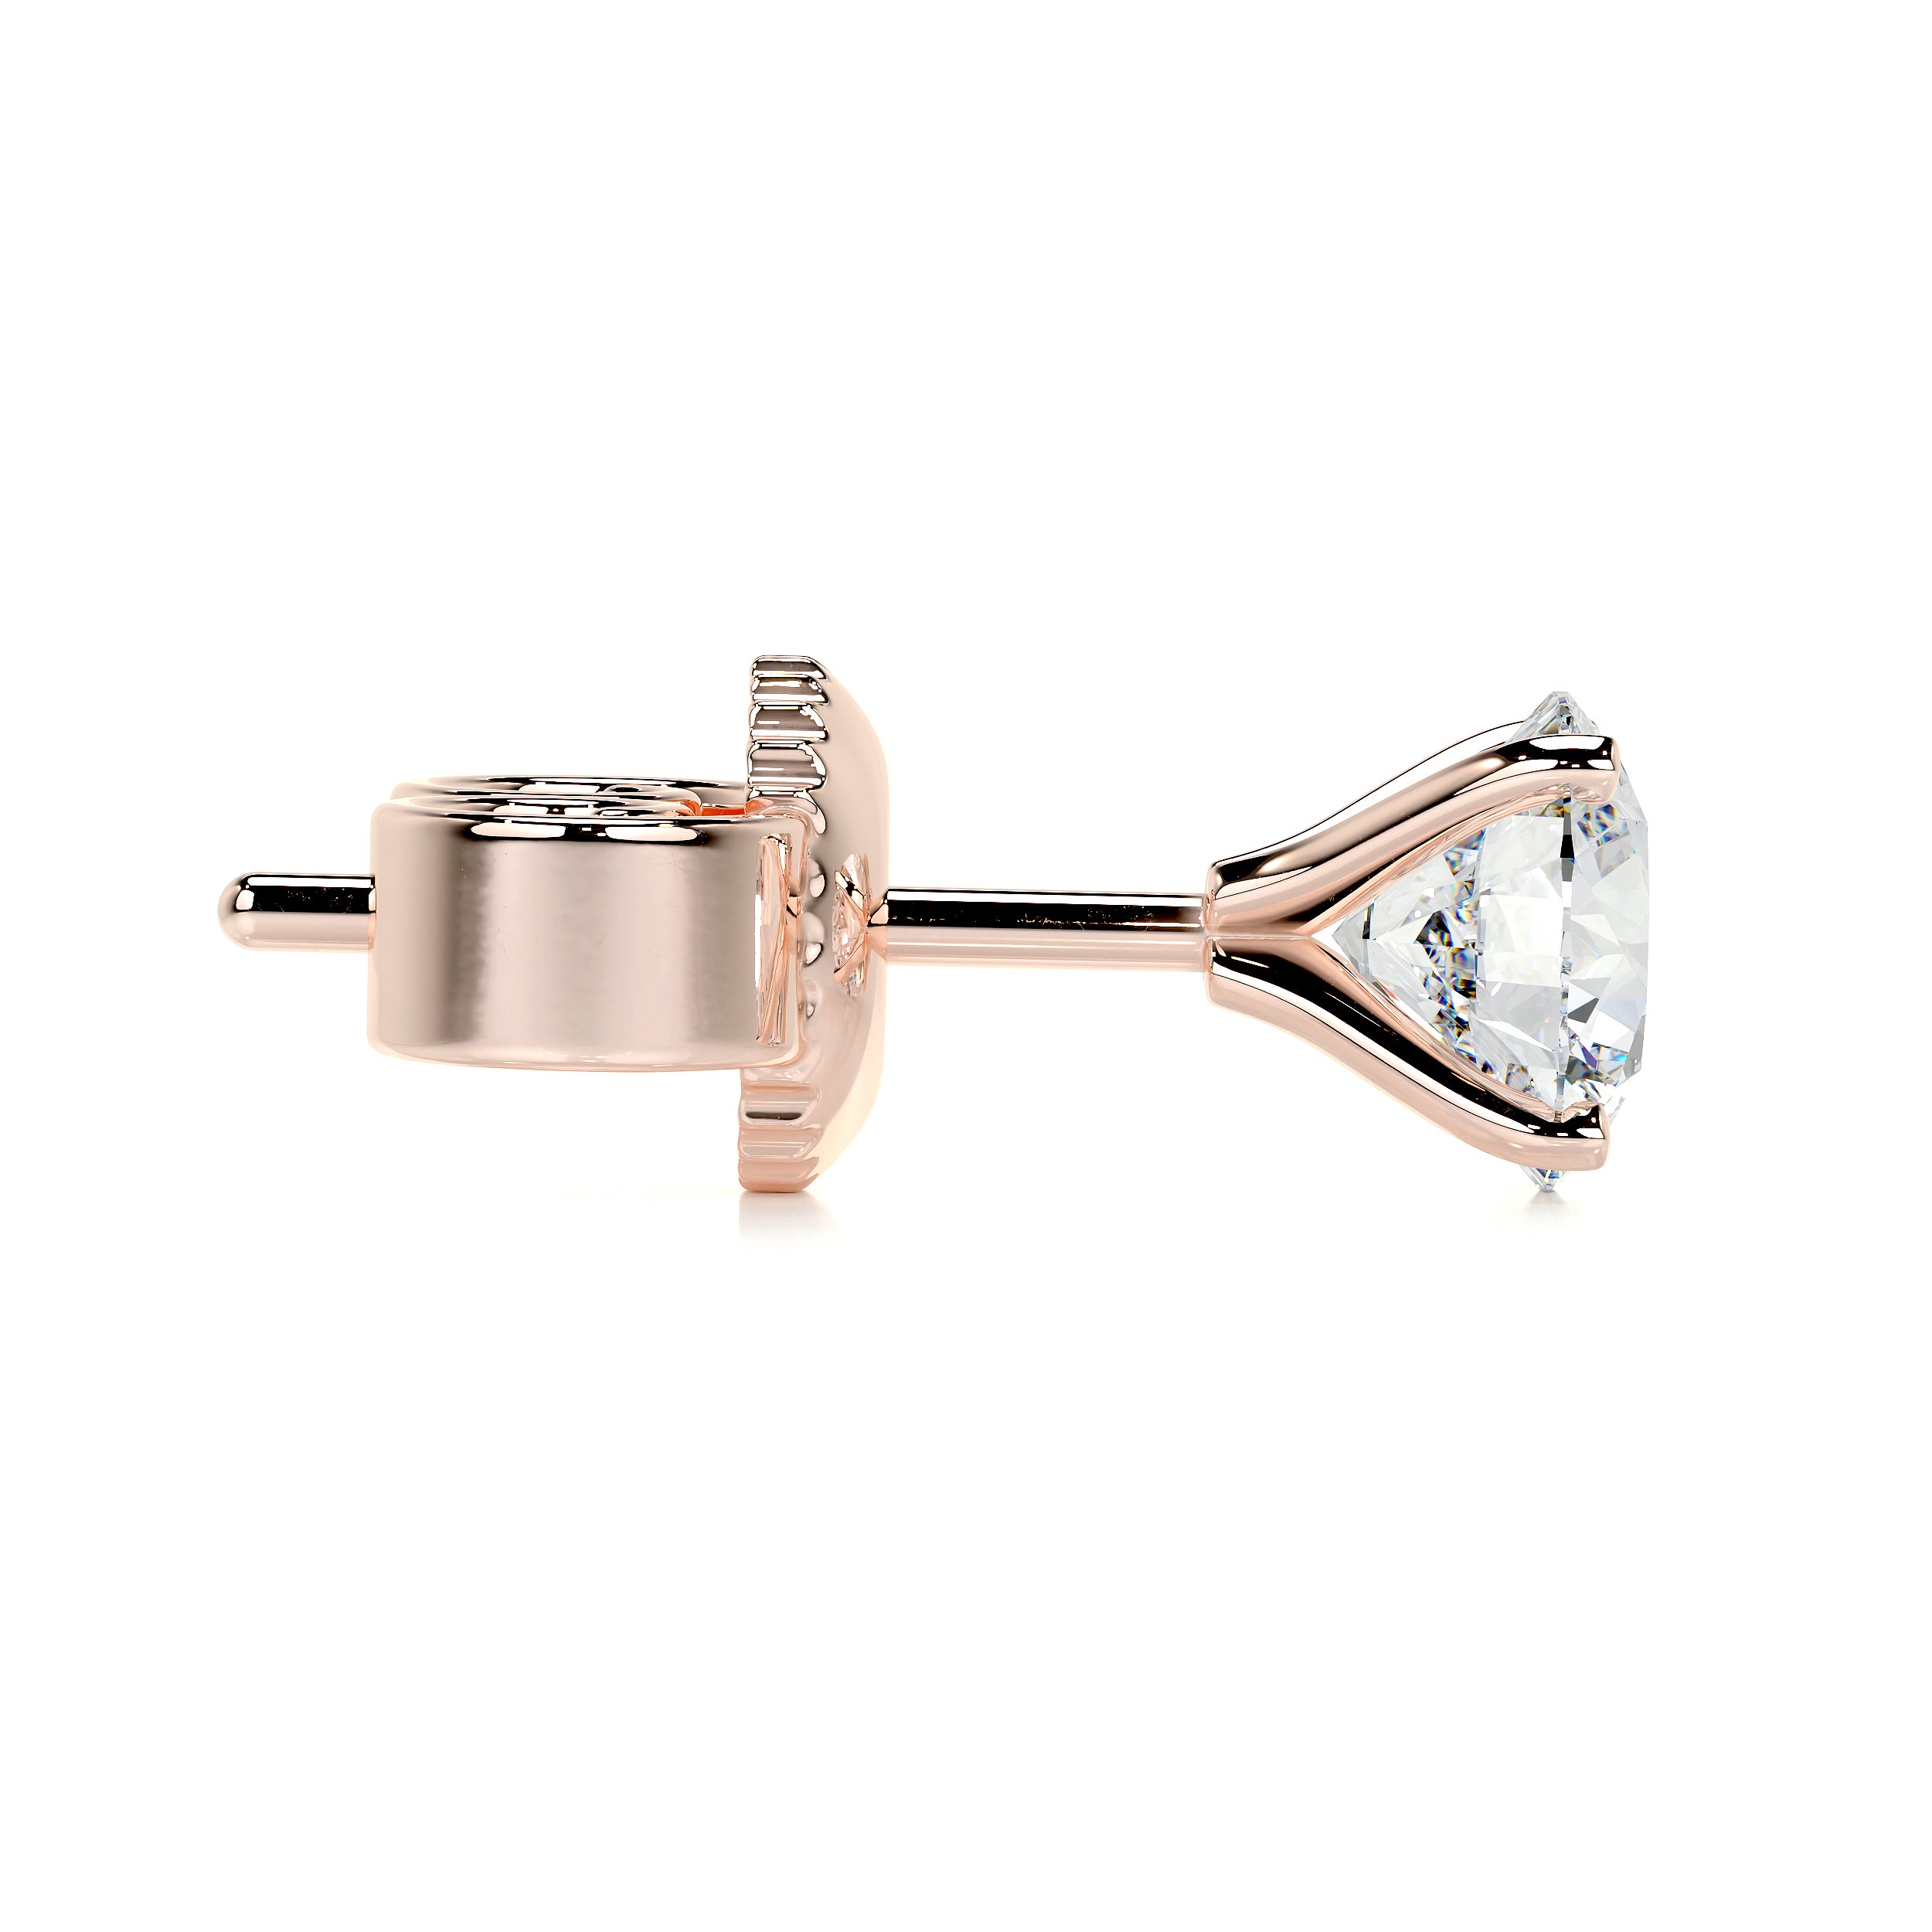 Allen Lab Grown Diamond Earrings -14K Rose Gold